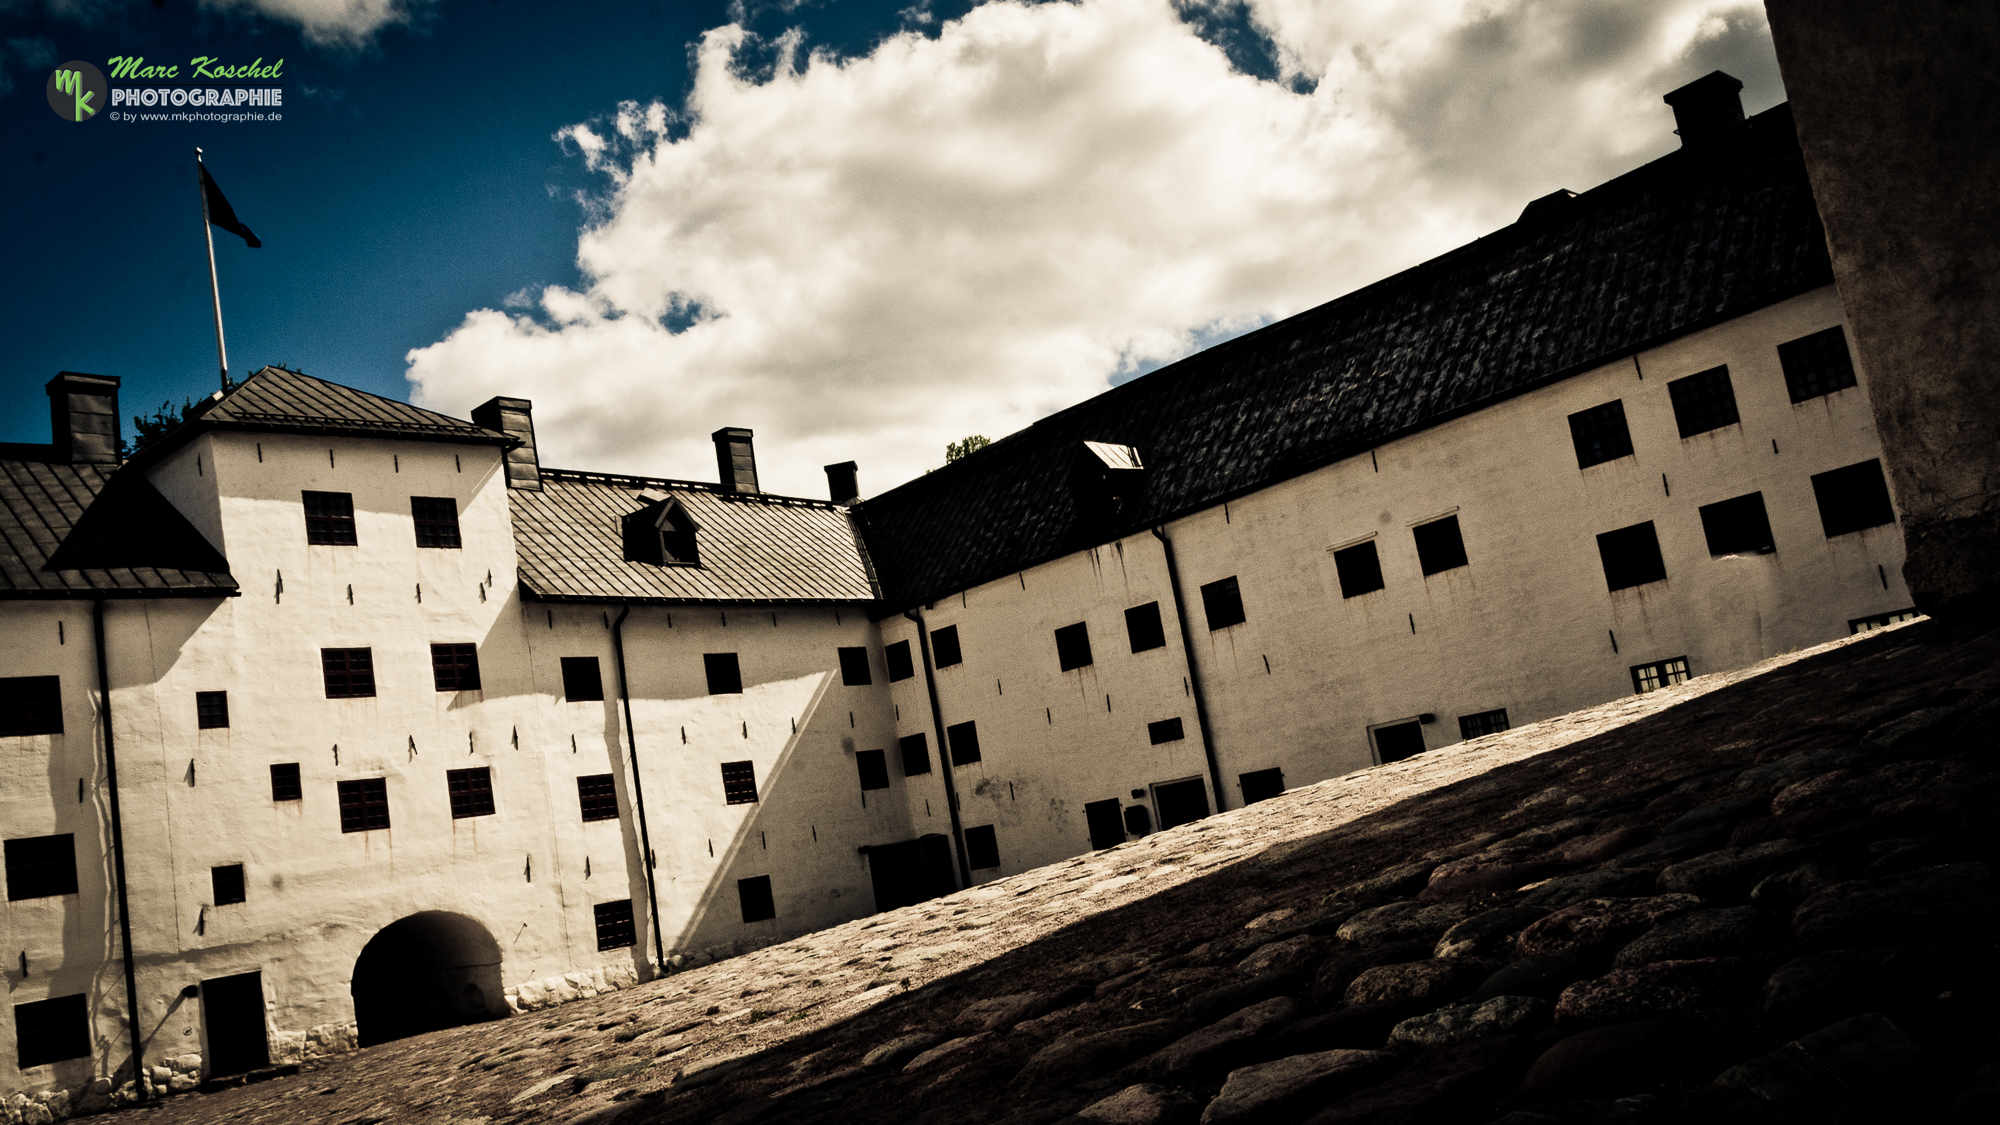 The Castle of Turku